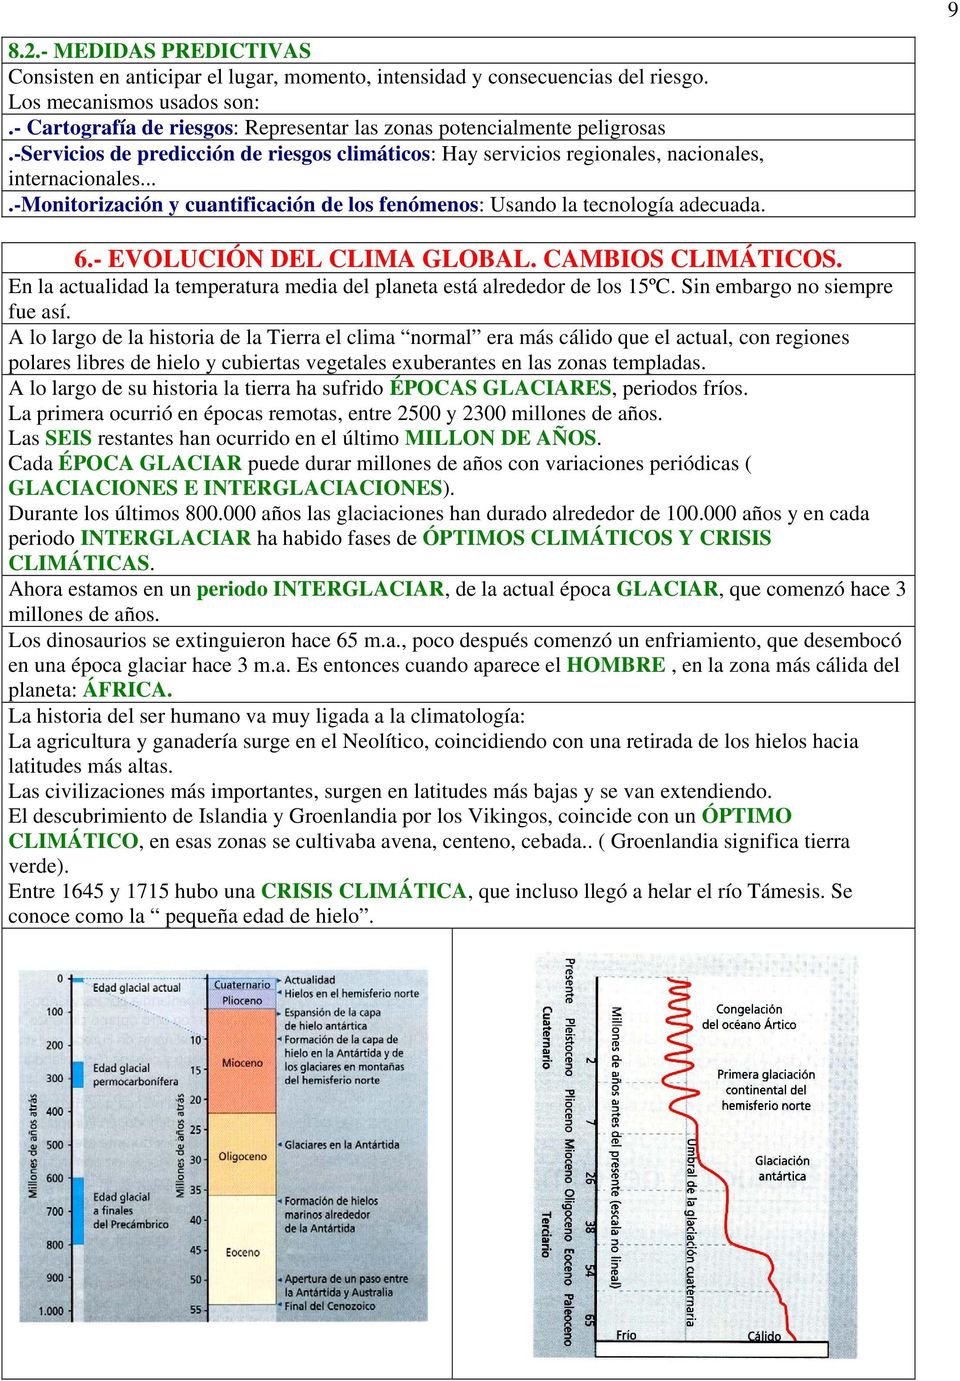 ...-monitorización y cuantificación de los fenómenos: Usando la tecnología adecuada. 6.- EVOLUCIÓN DEL CLIMA GLOBAL. CAMBIOS CLIMÁTICOS.